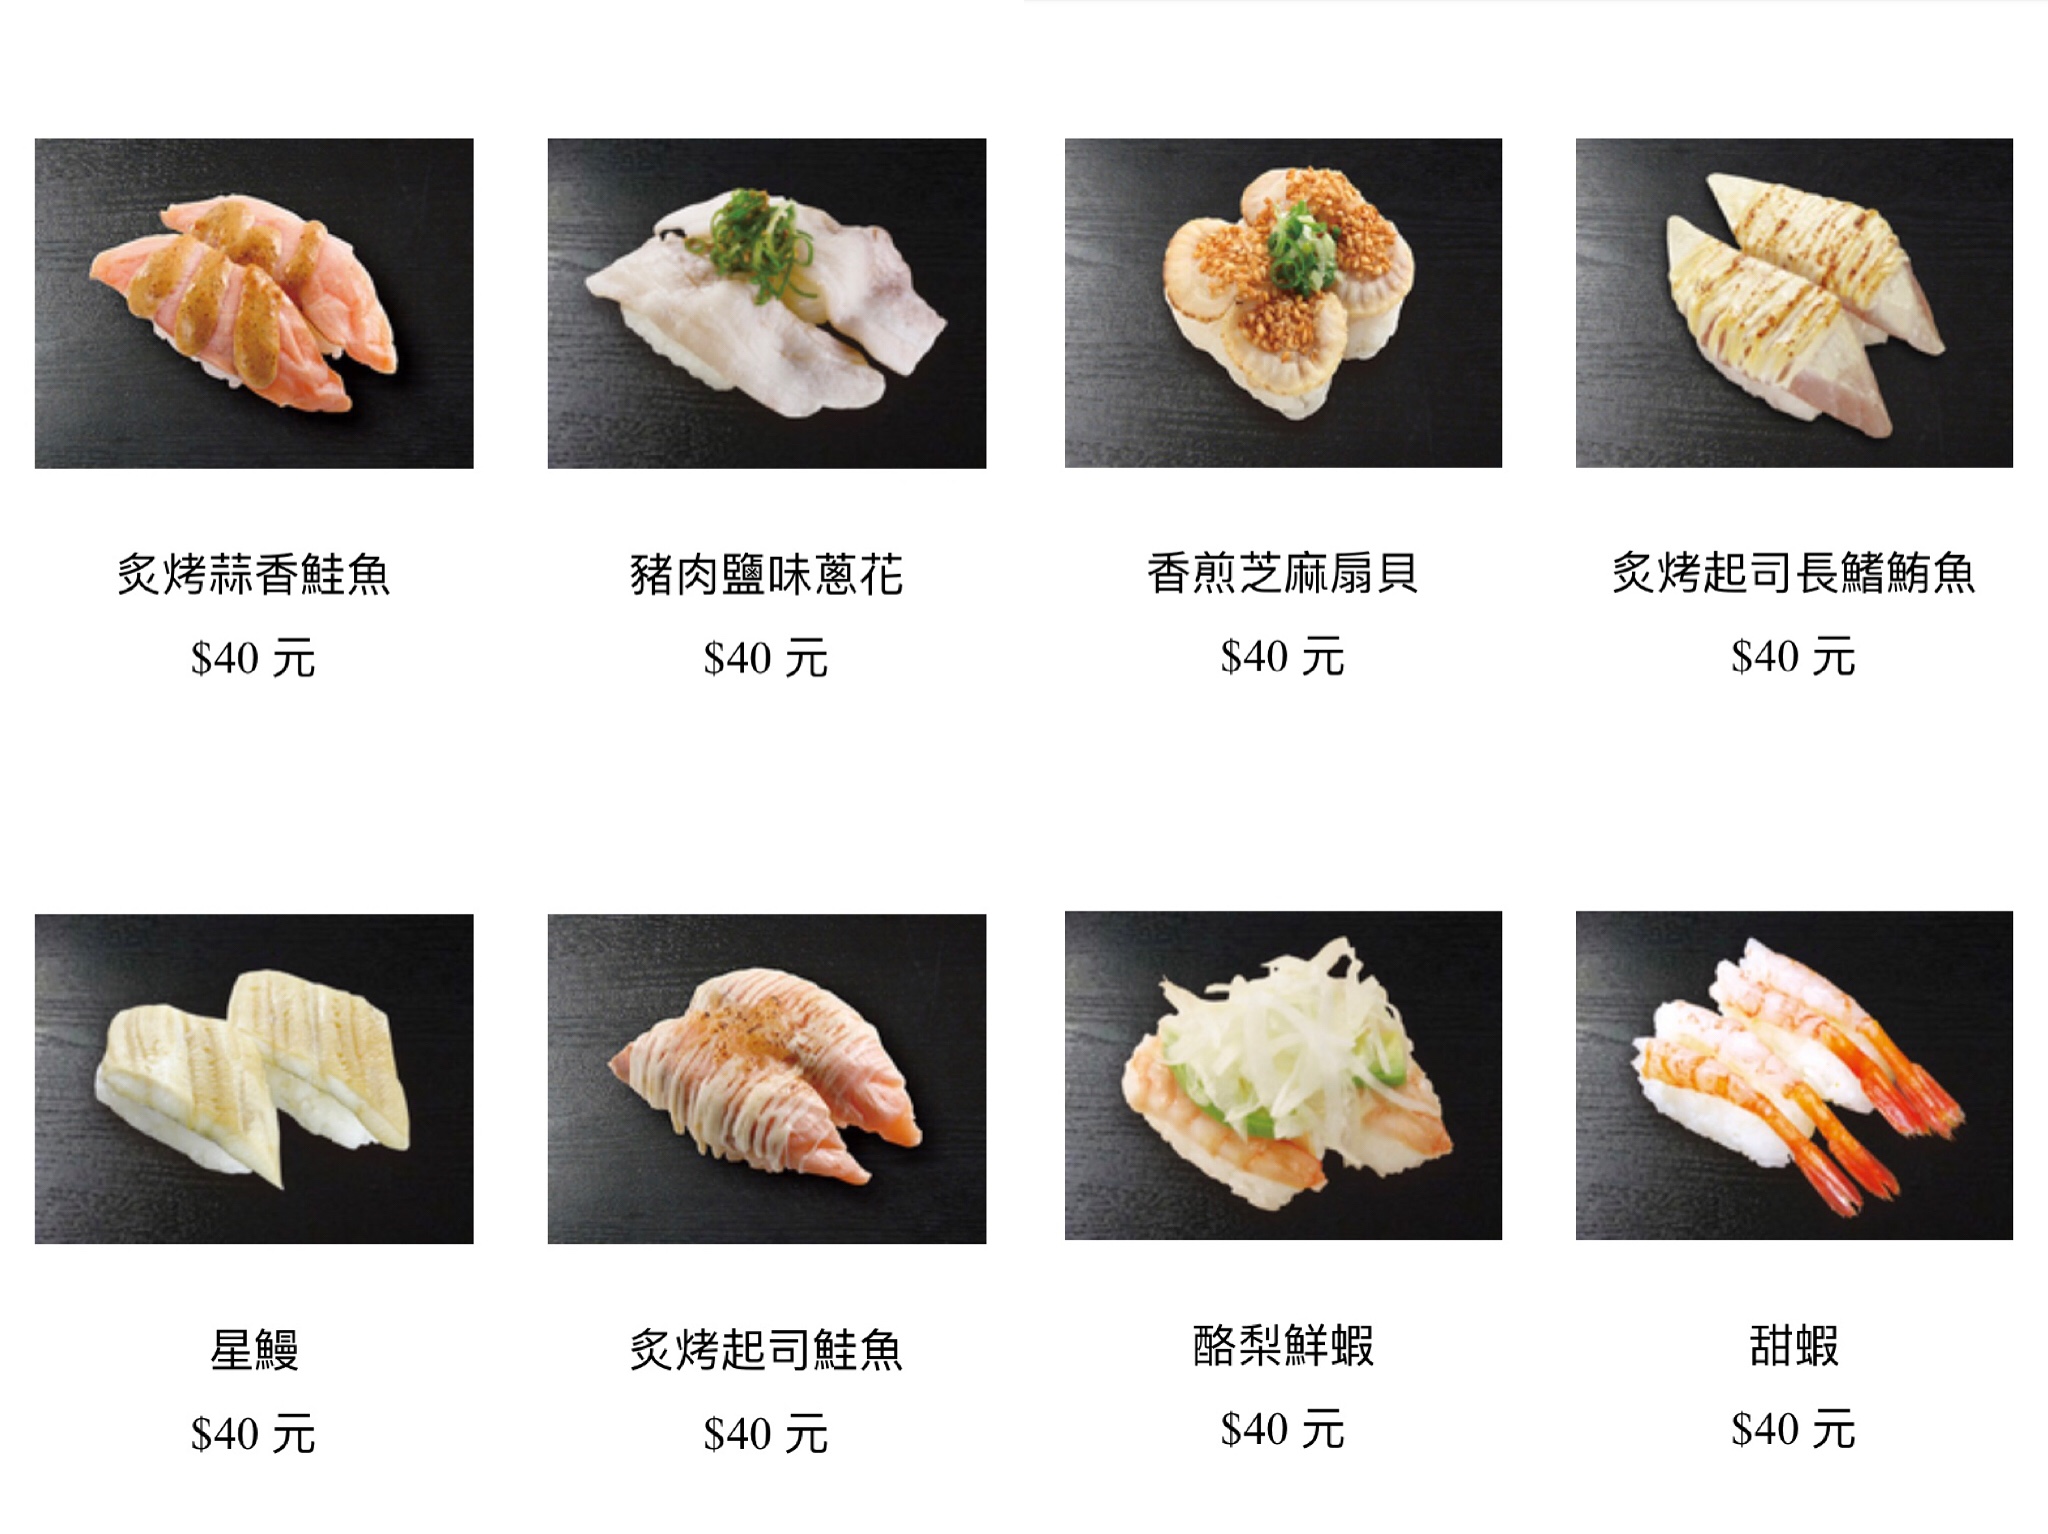 菜單 藏壽司菜單 21年新菜單 價目表 持續更新中 痴吃的玩